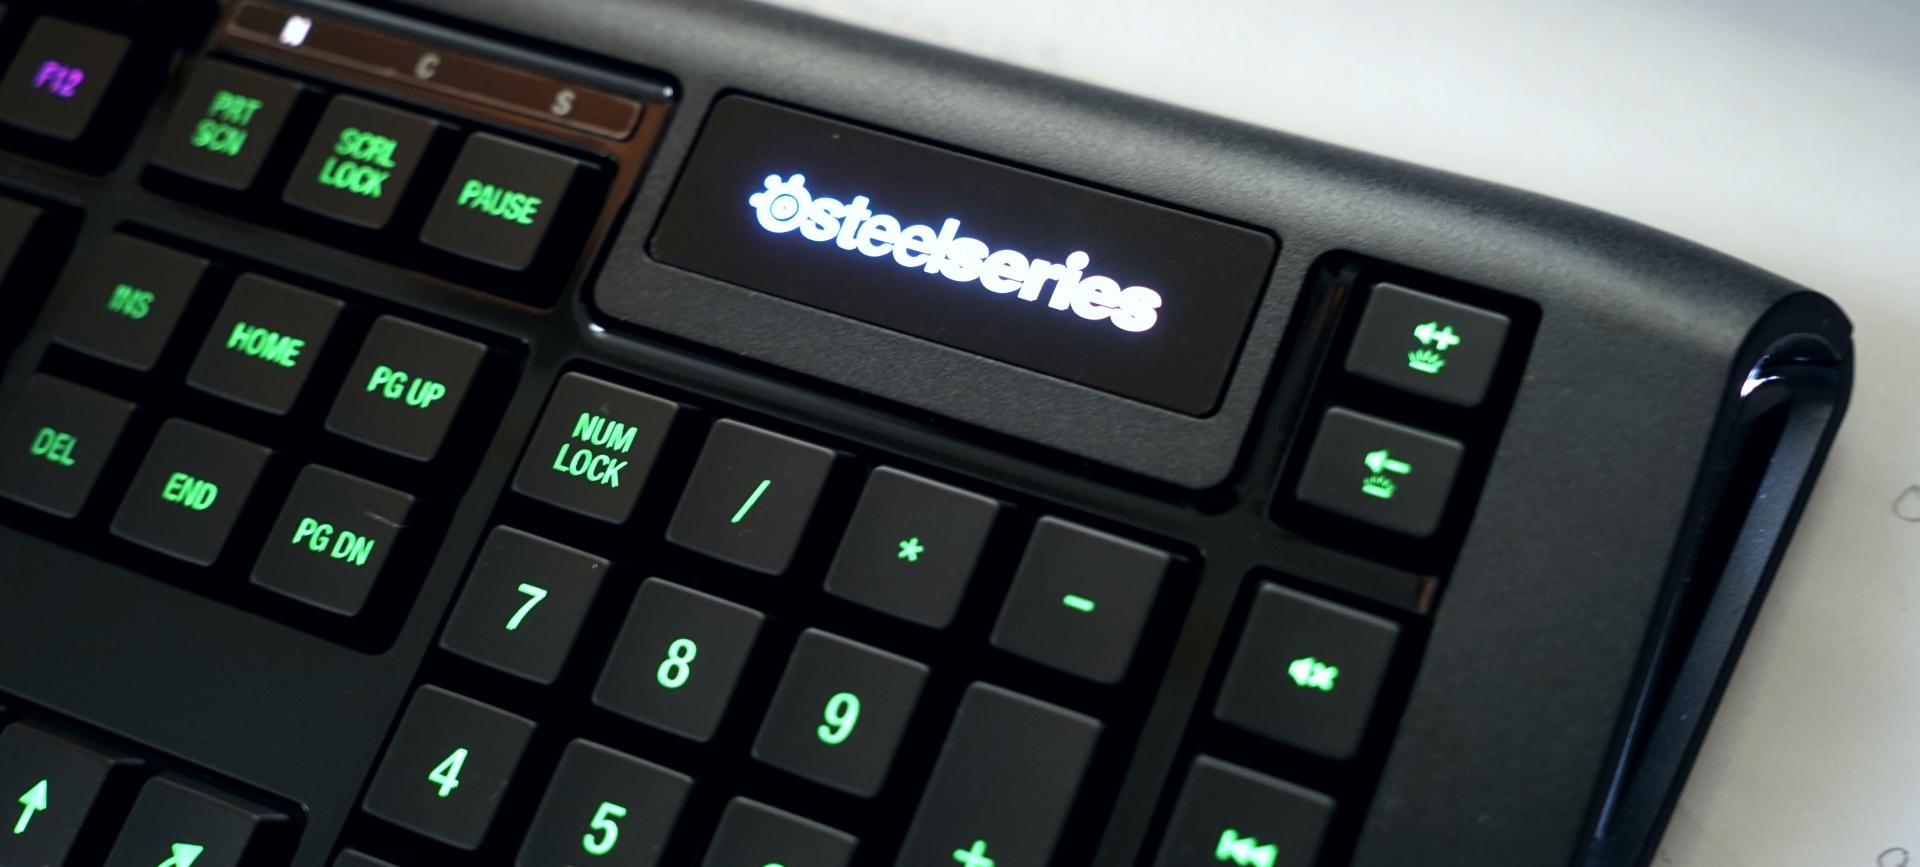 SteelSeries Apex 350 - Kẻ chấn hưng cho dòng bàn phím cao su